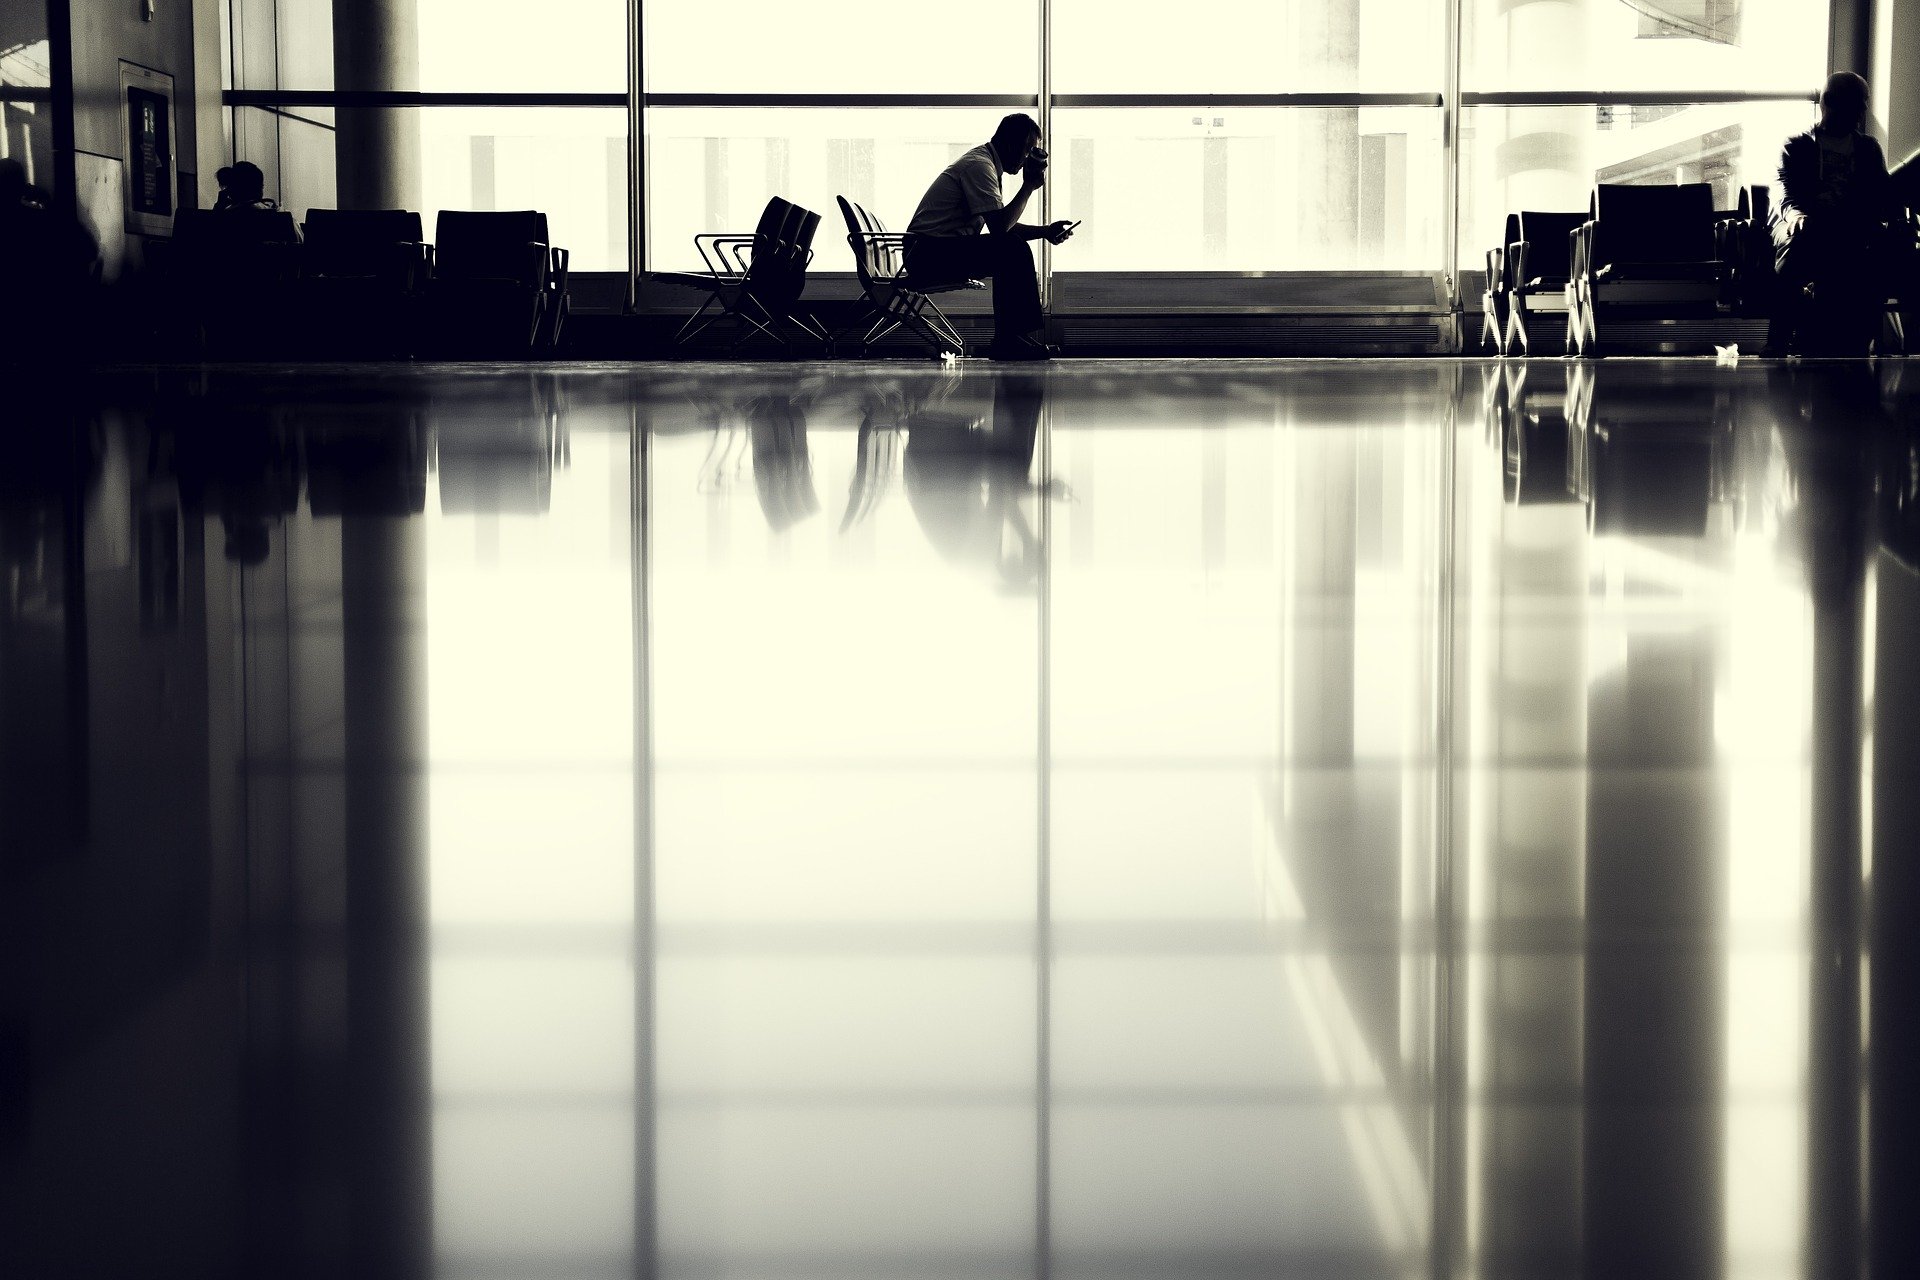 Single passenger waits at airport